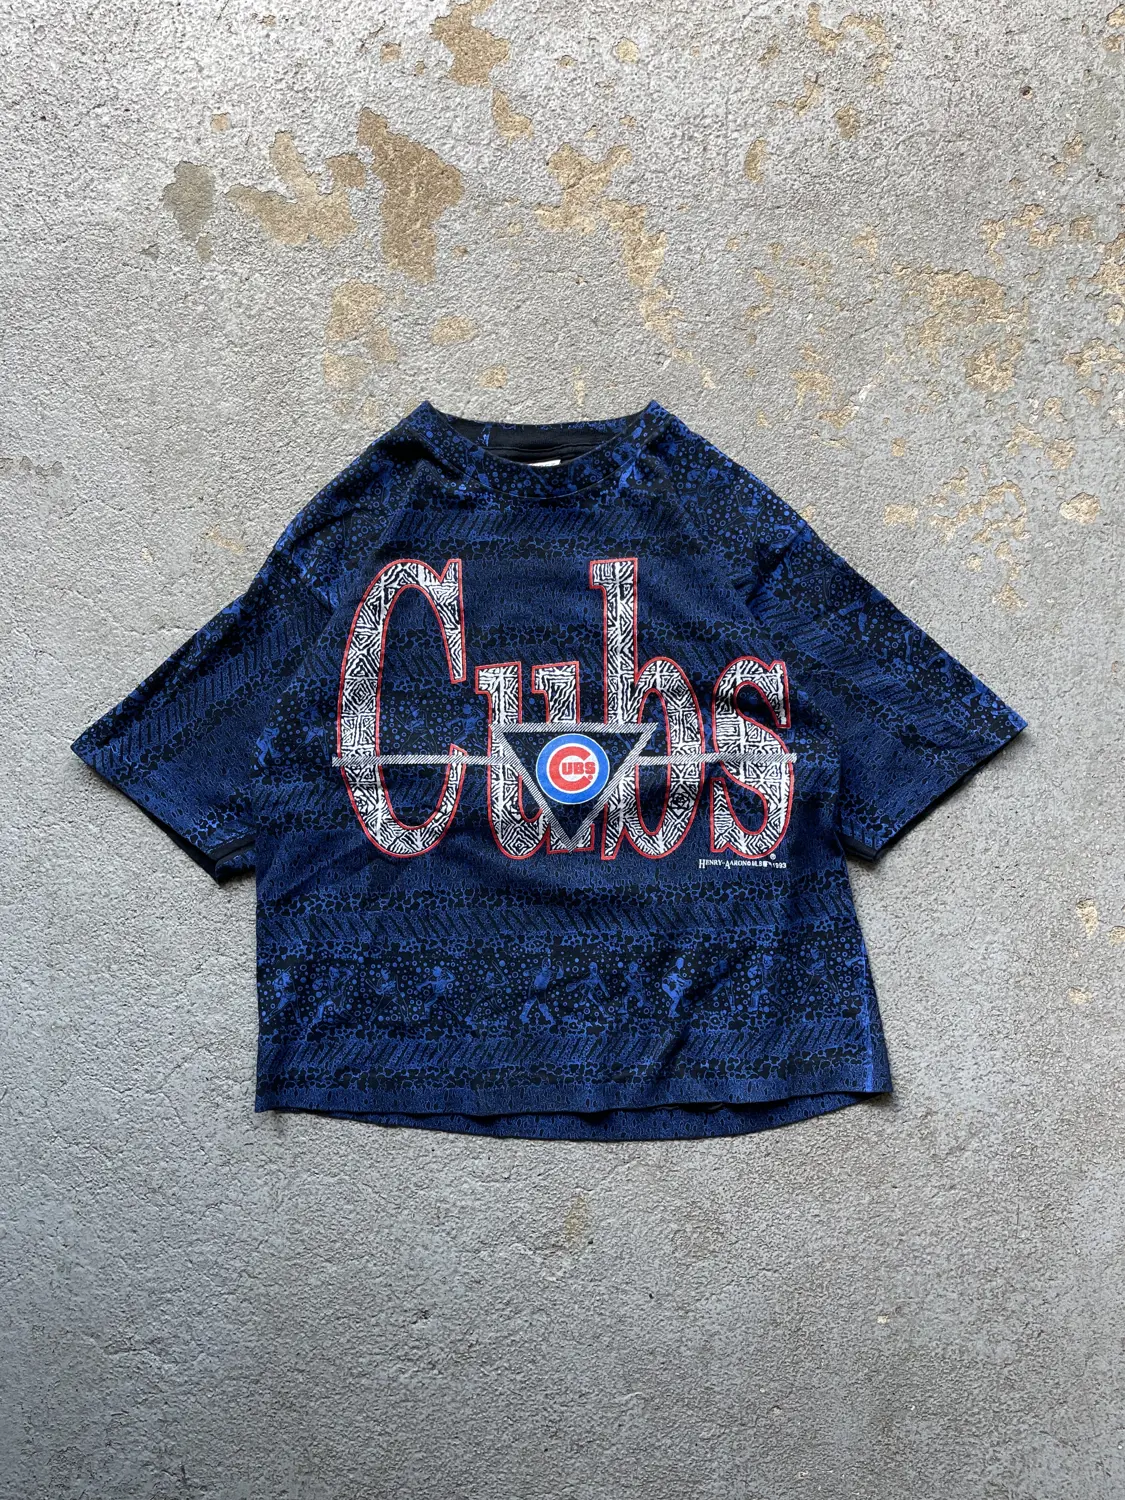 Vintage 1993 Cubs Tee